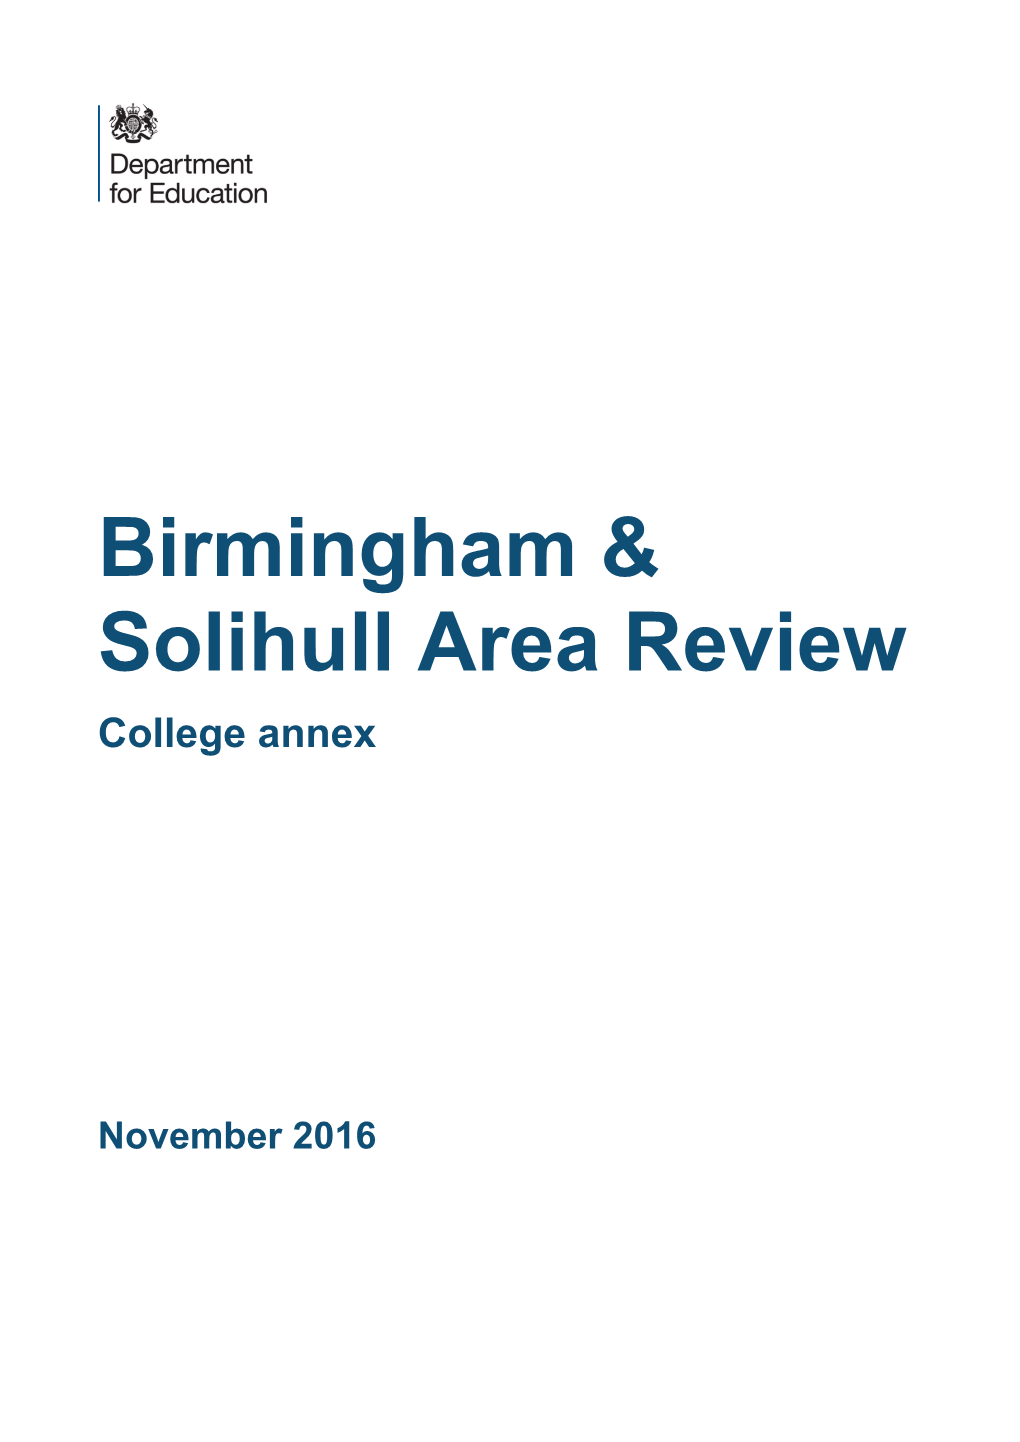 Birmingham & Solihull Area Review: College Annex